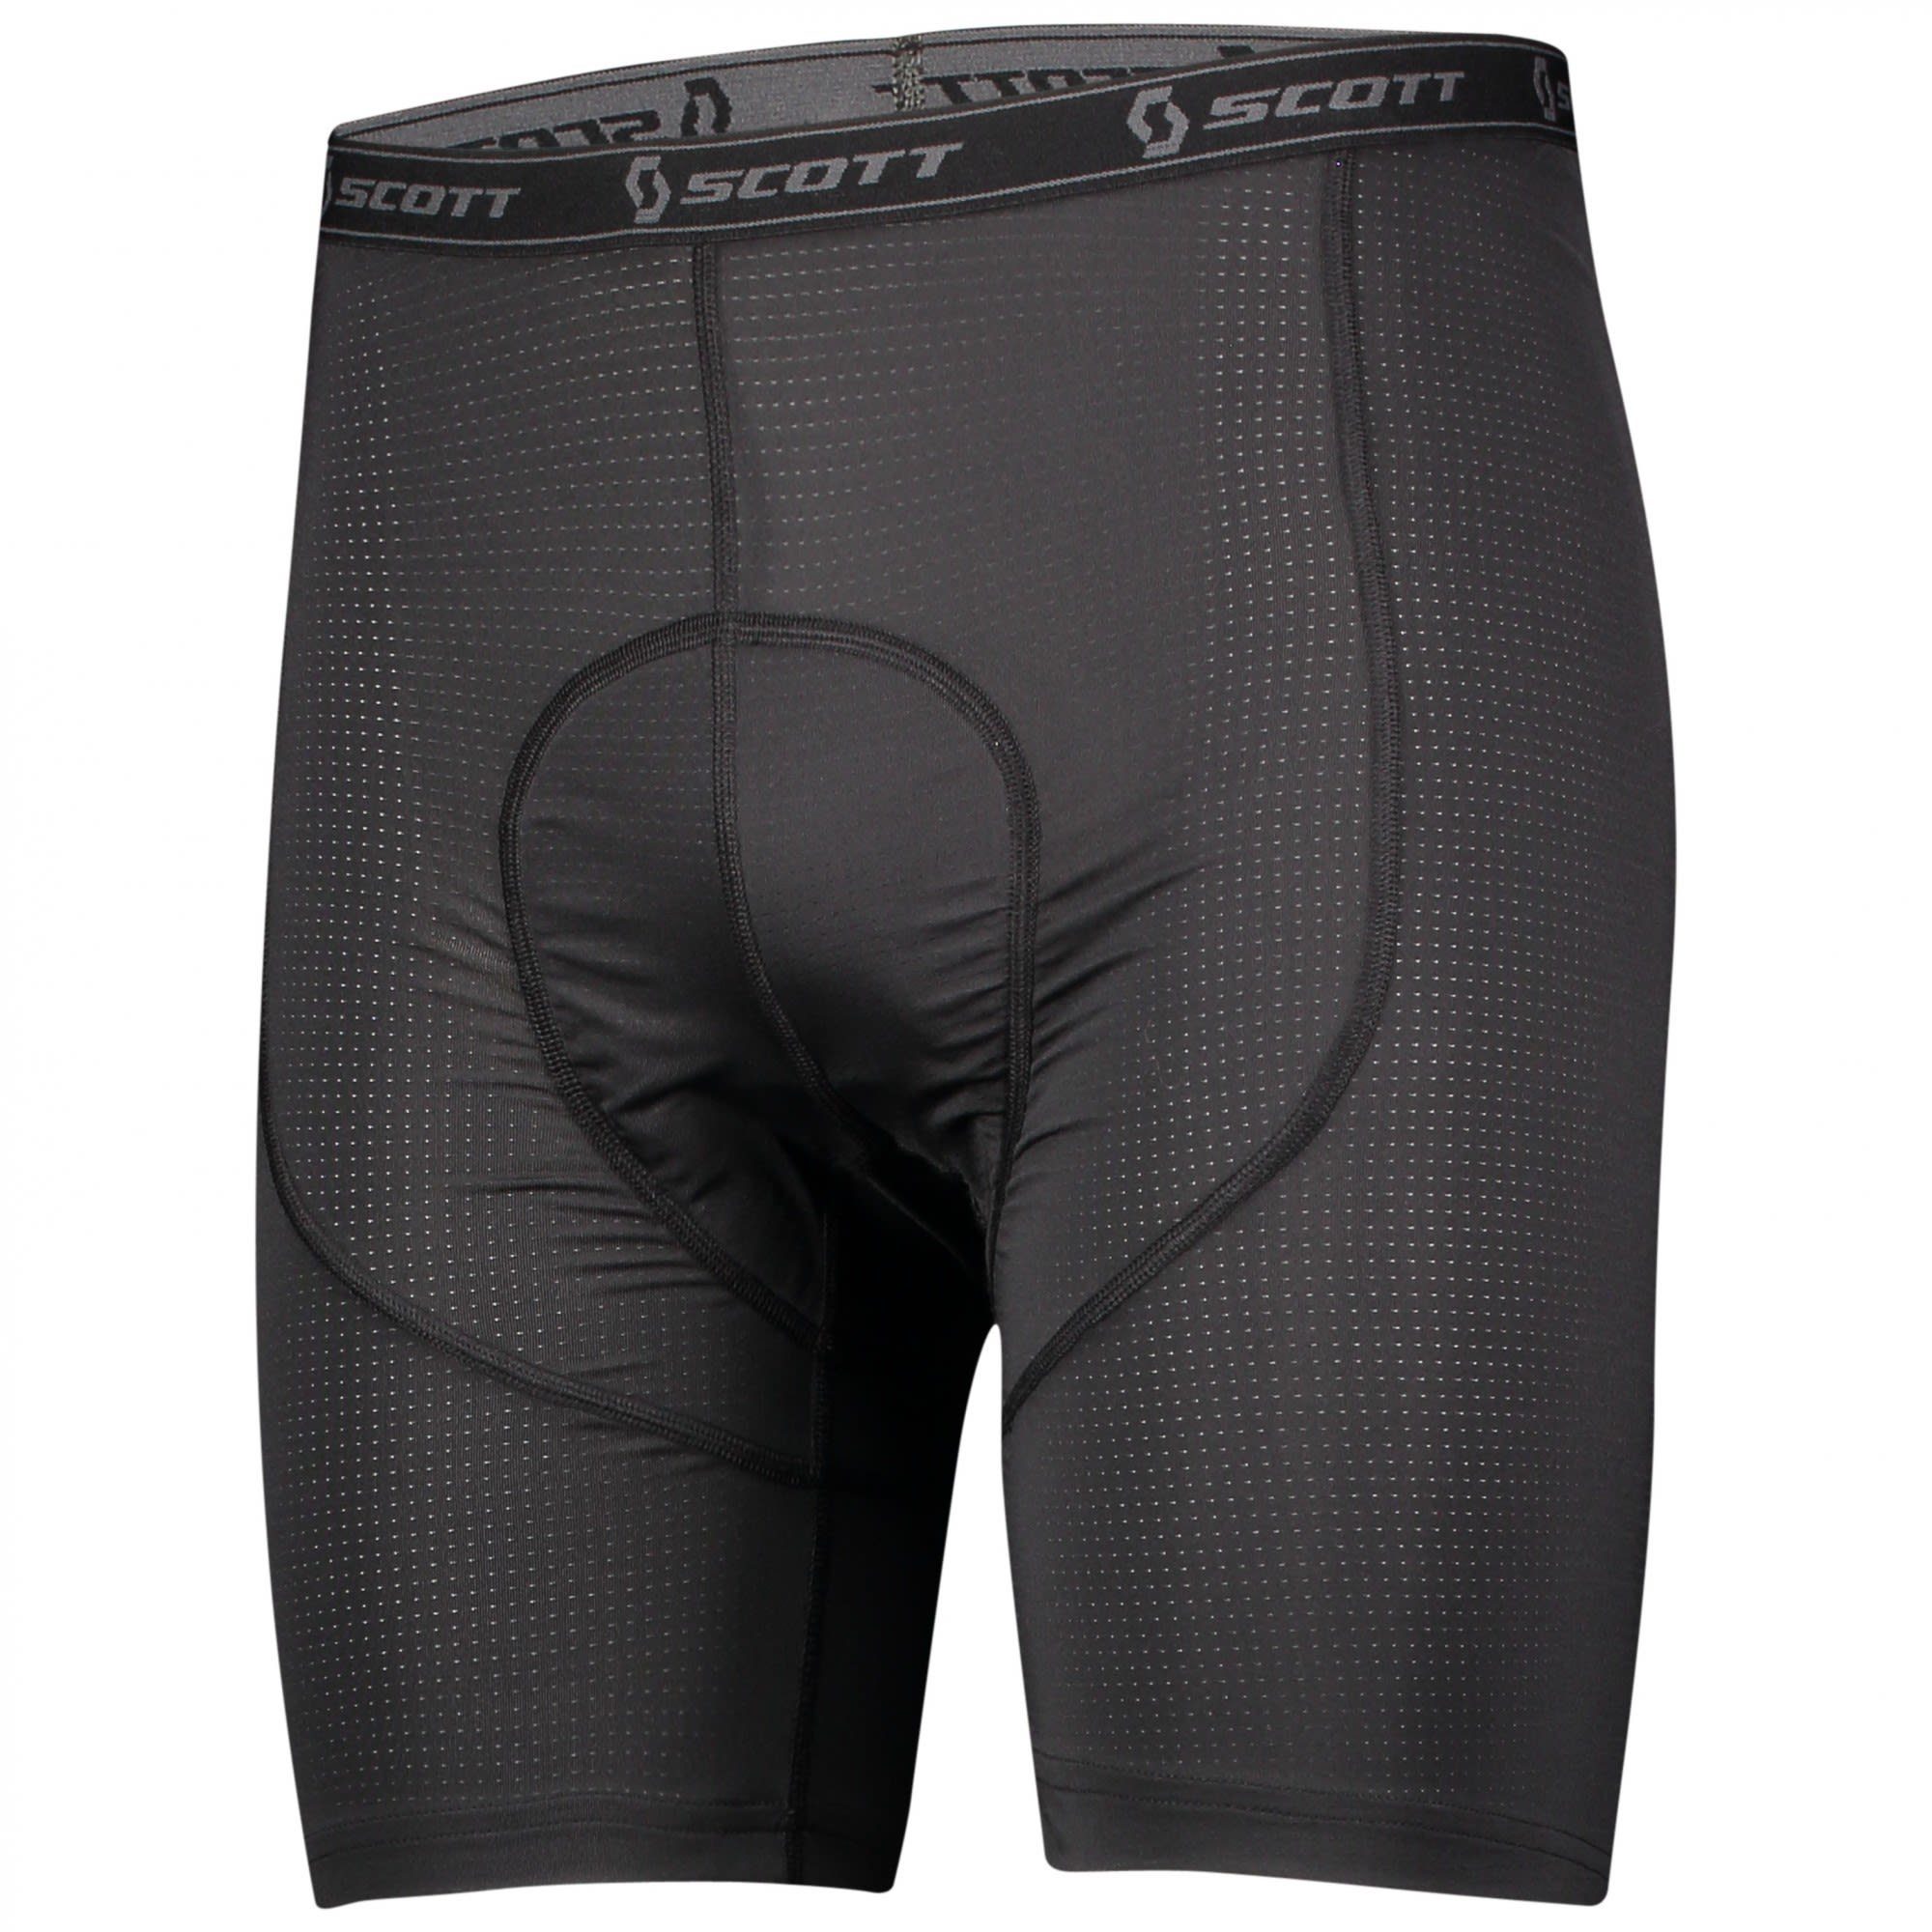 Kurze Lange Scott Trail Shorts Unterhose Herren M Underwear + Scott